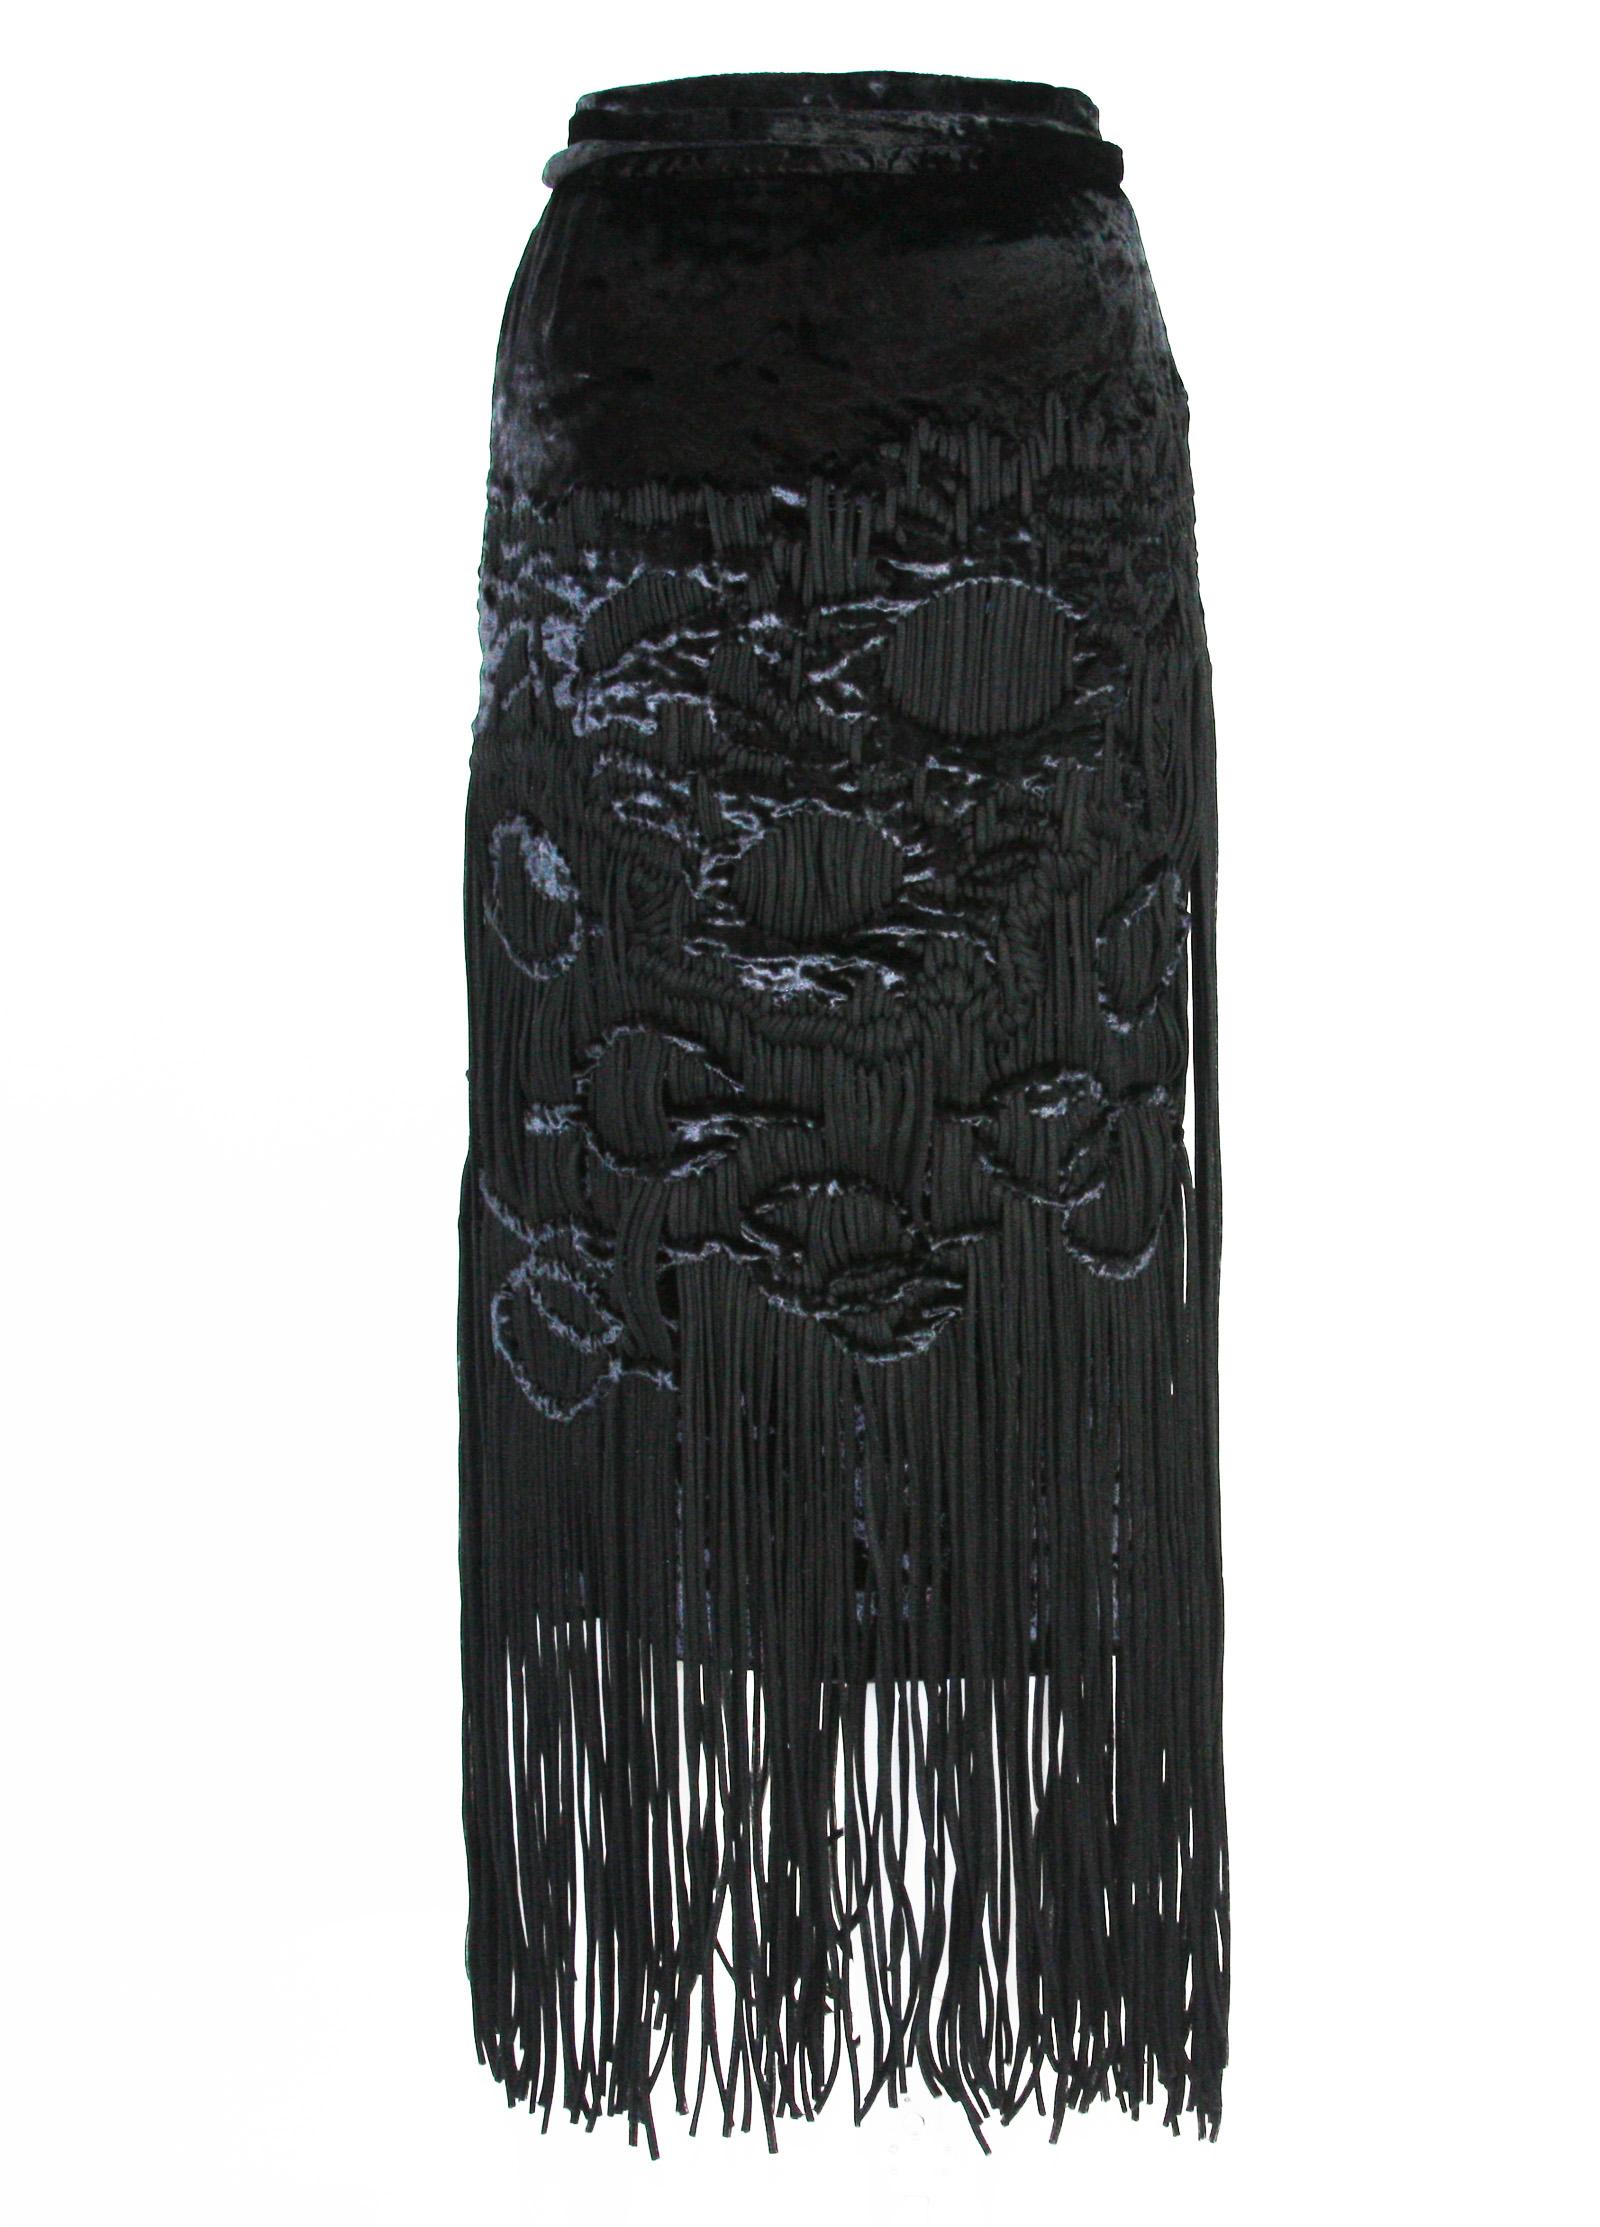 Tom Ford for Yves Saint Laurent 2001-2003 Collection Silk Top Velvet Skirt Suit  For Sale 7